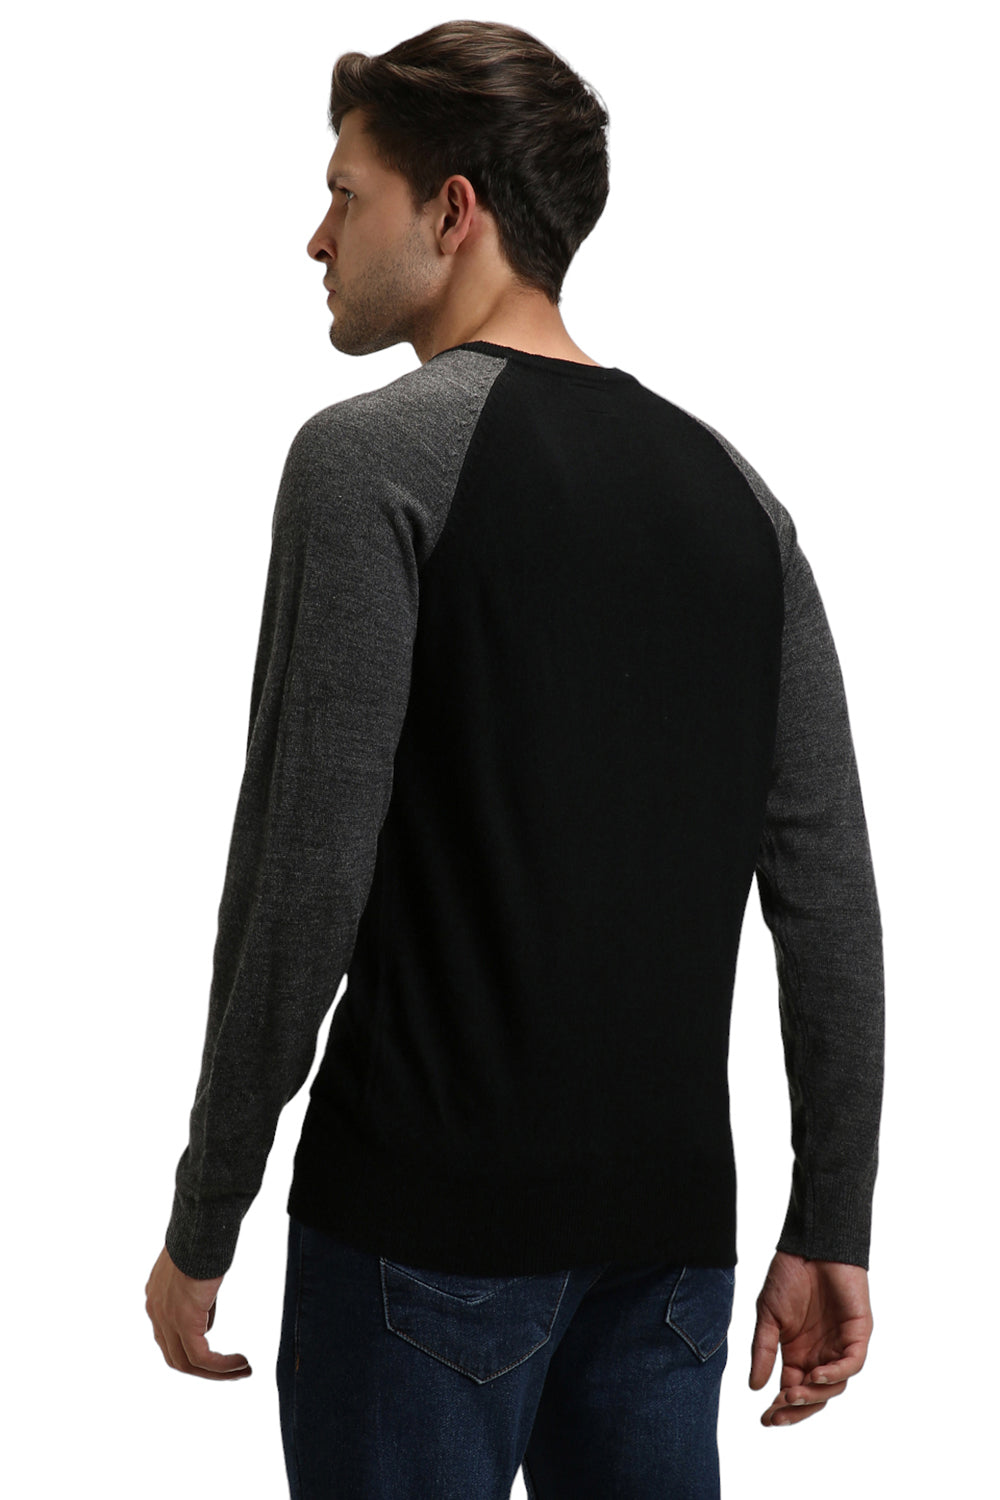 Dennis Lingo Men's Black Colourblock  Full Sleeves Pullover Sweater